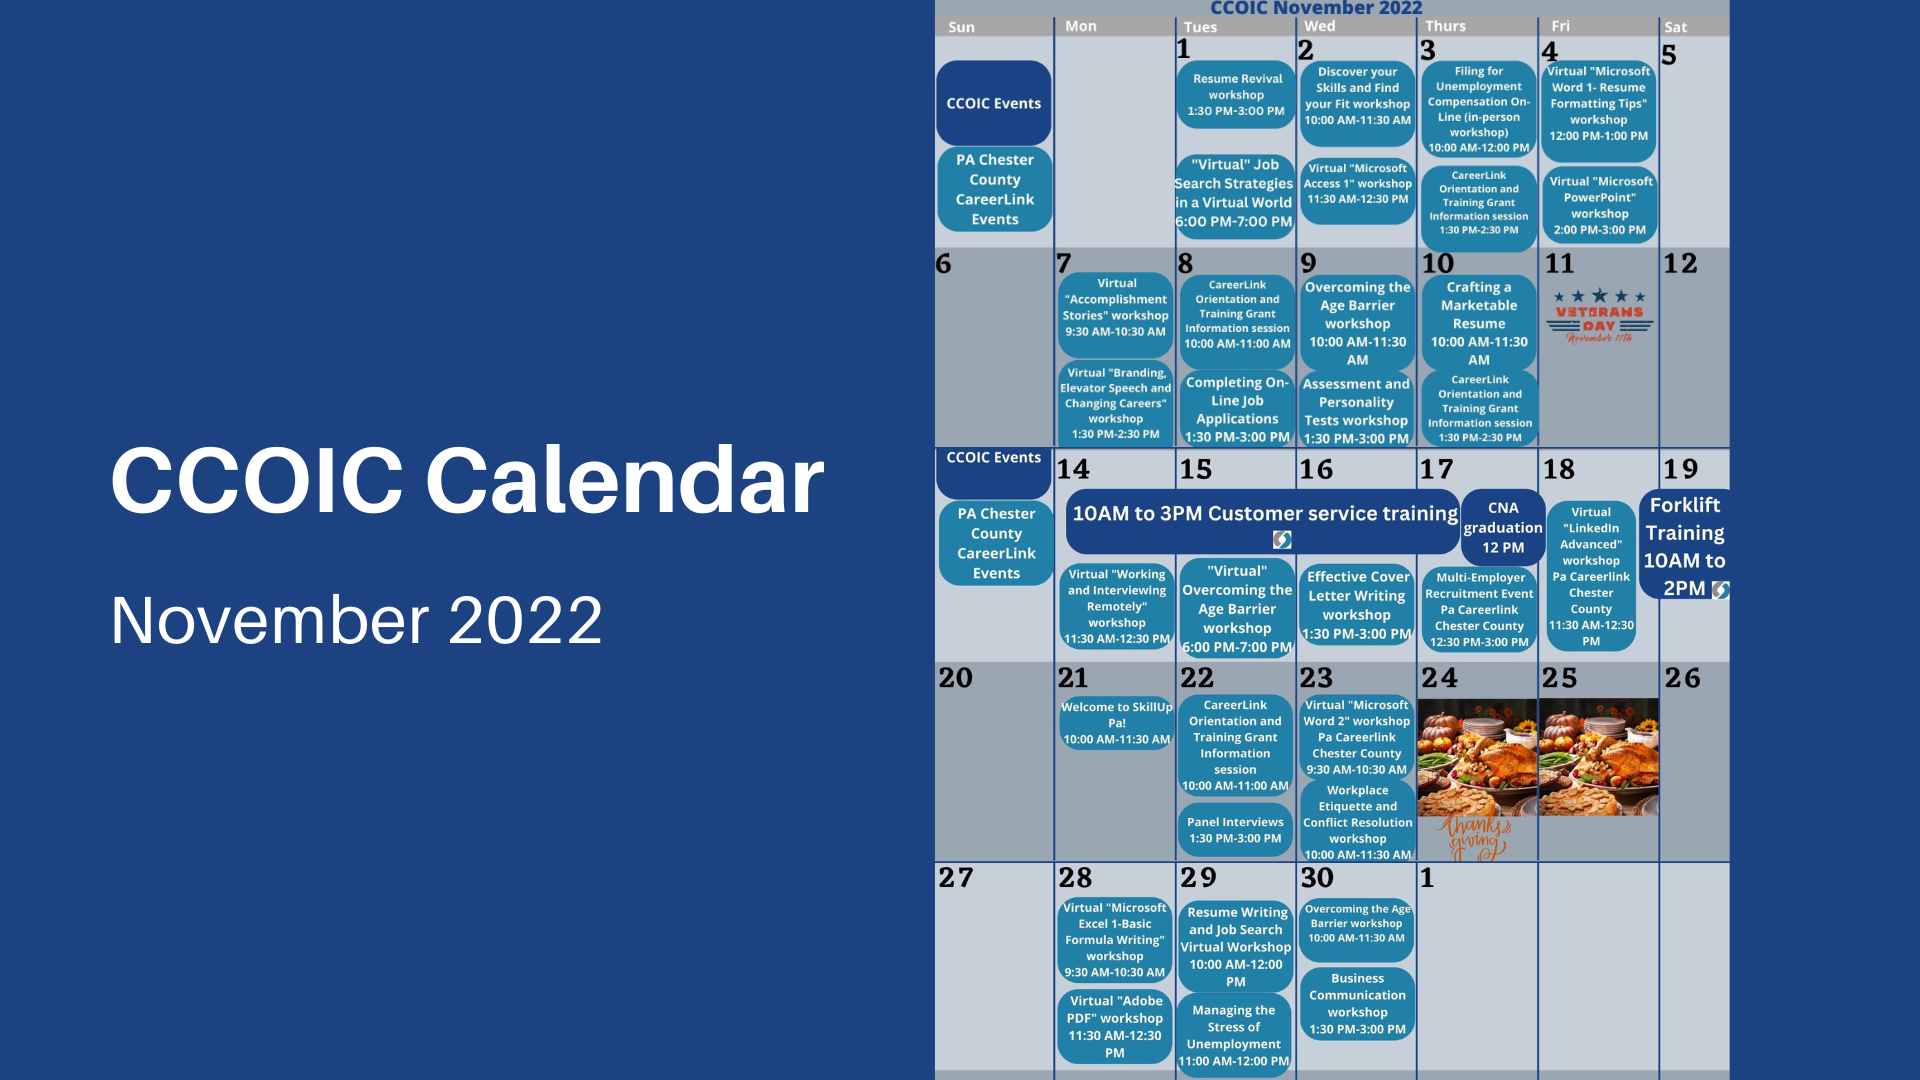 CCOIC Nov 2022 Calendar